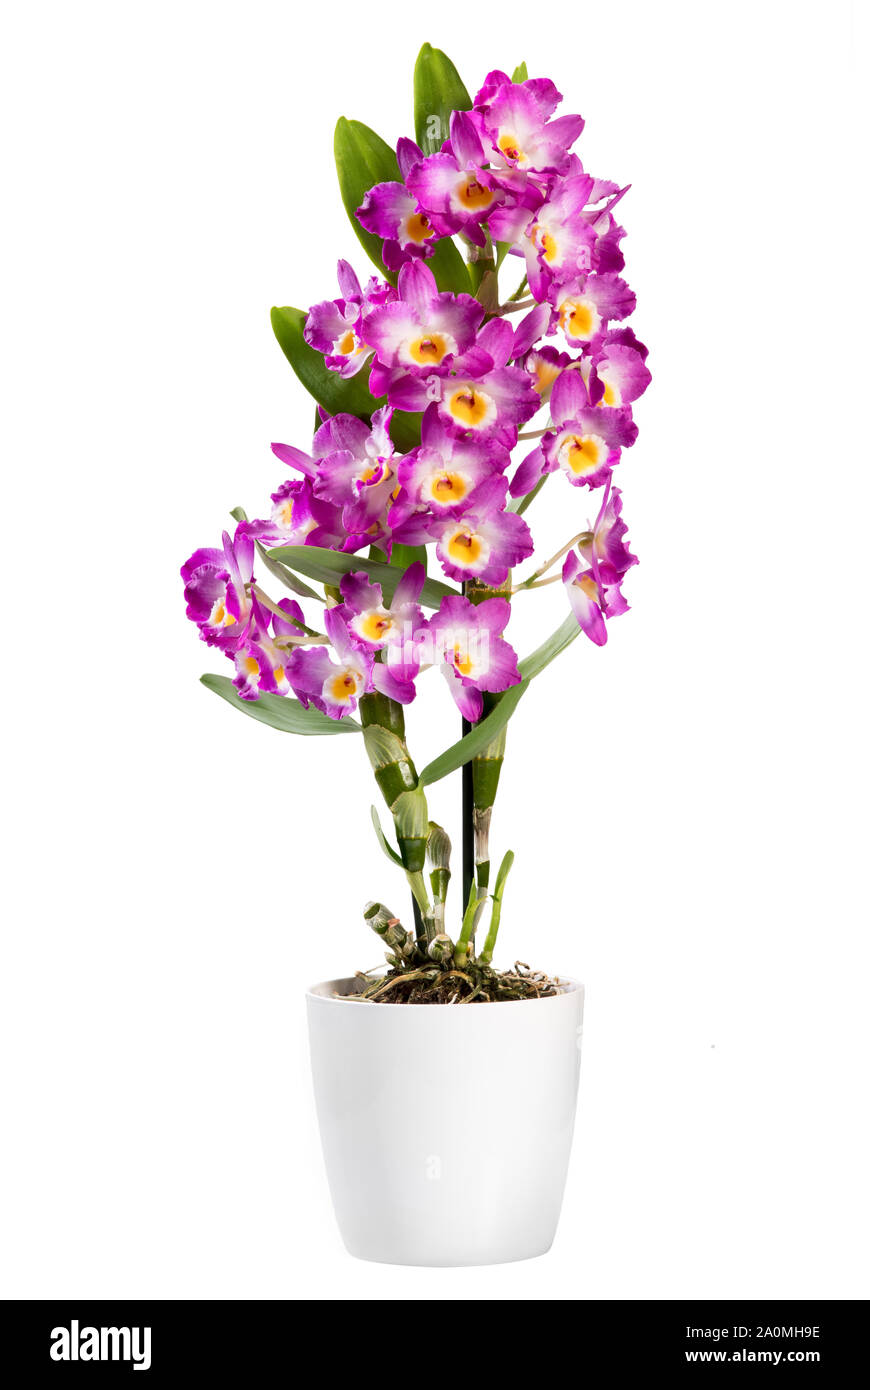 Dendrobium planta potted aislado en blanco, una orquídea epífita con sprays de coloridas flores de color rosa brillante y popular houseplant Foto de stock